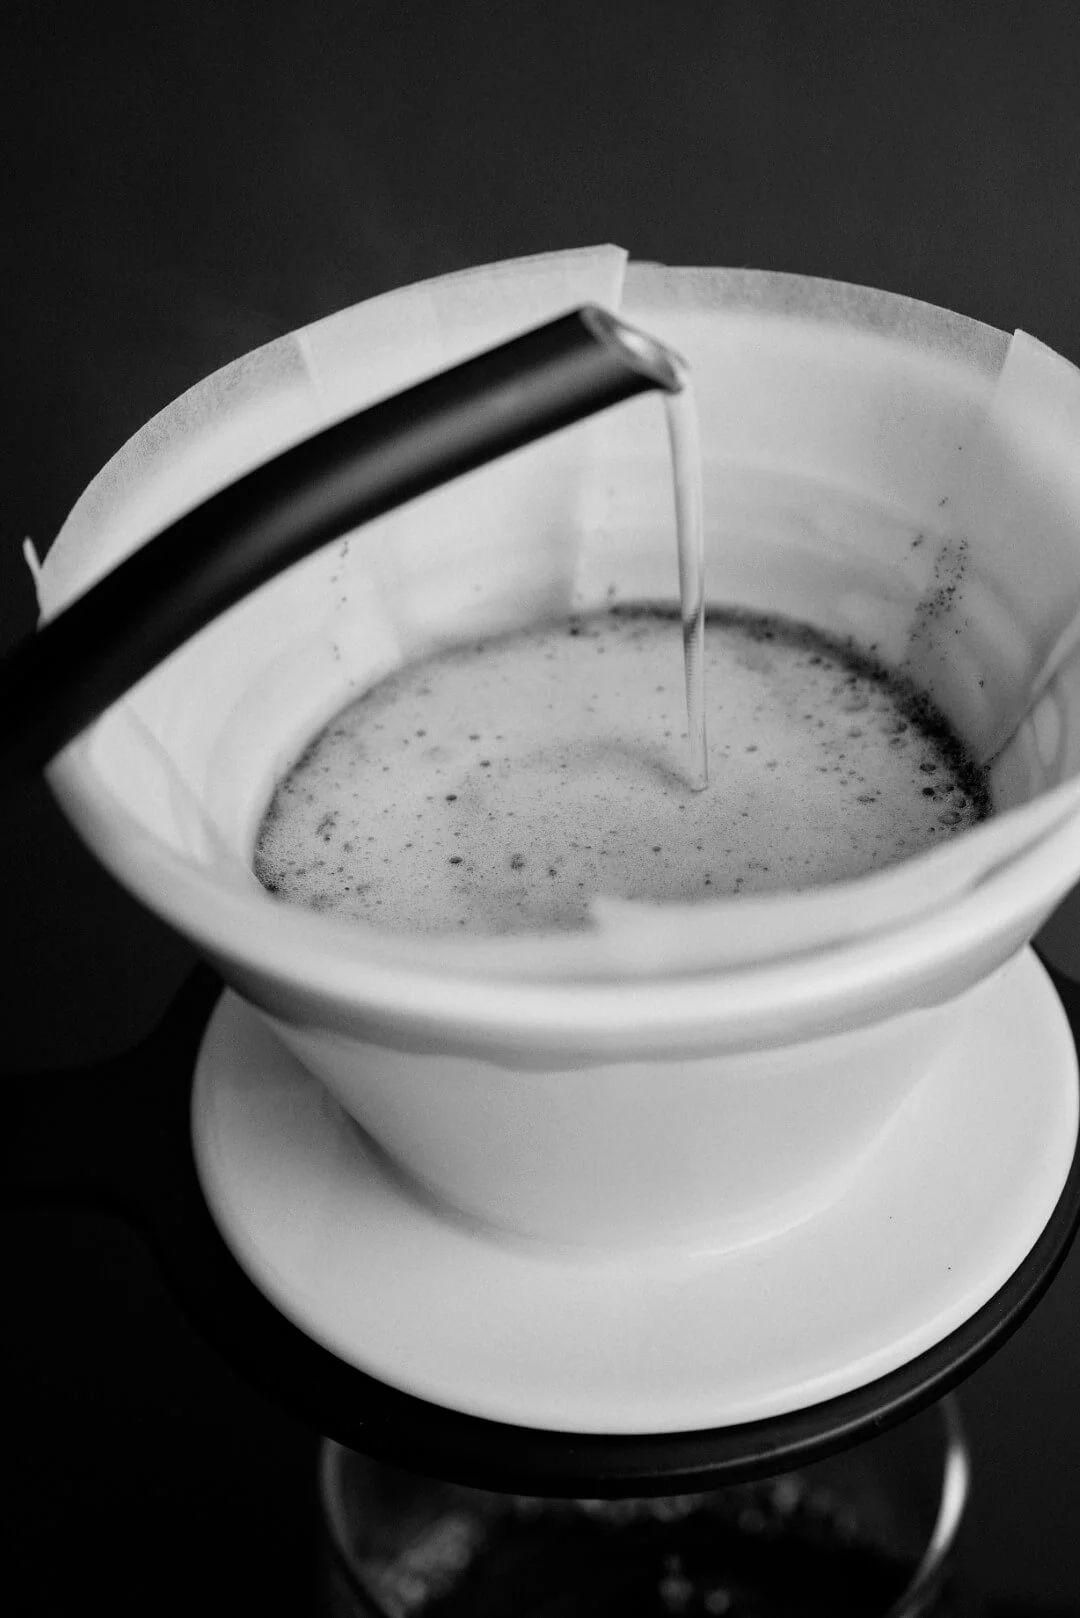 Zalévání kávy s filtrem Sibarist.
